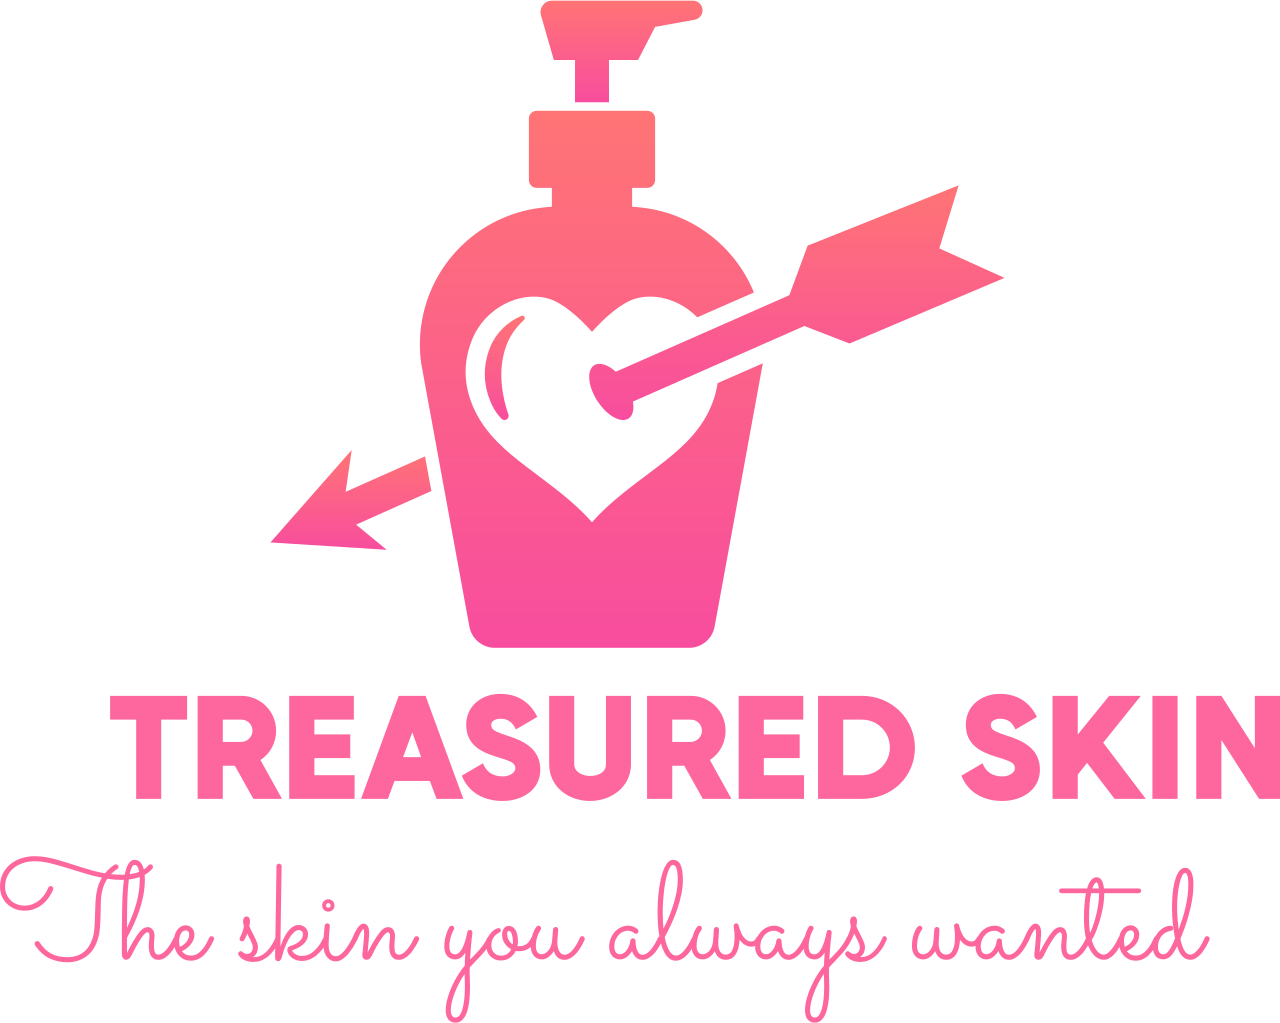 Treasured skin's web page